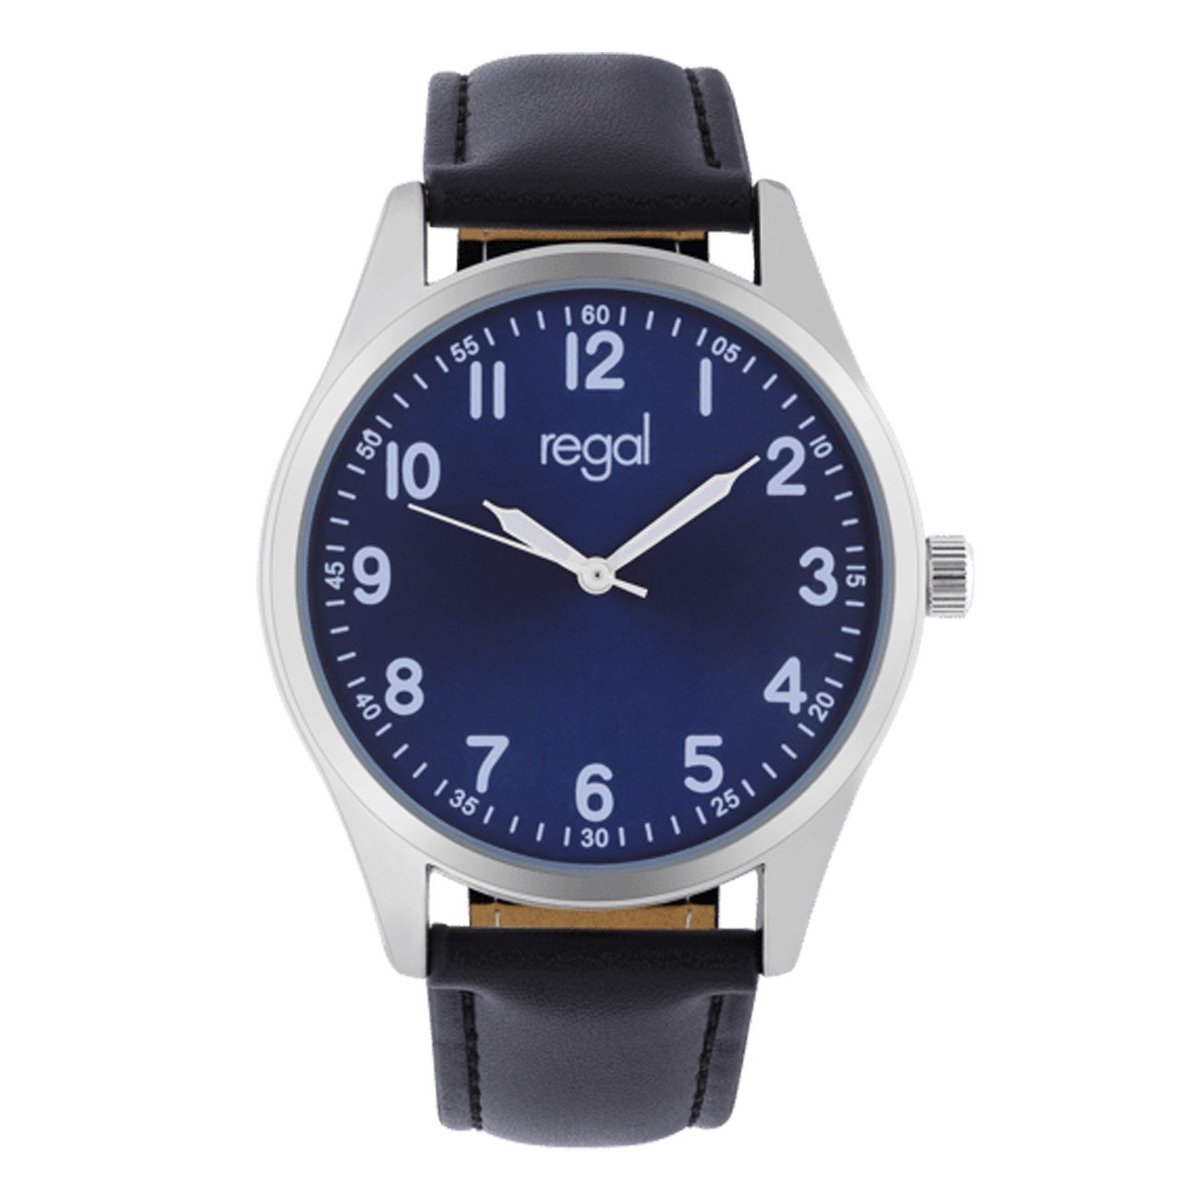 Lucardi Heren Regal Heren Horloge Zwart PU leer - Horloge - PU leer - Zwart - 40 mm